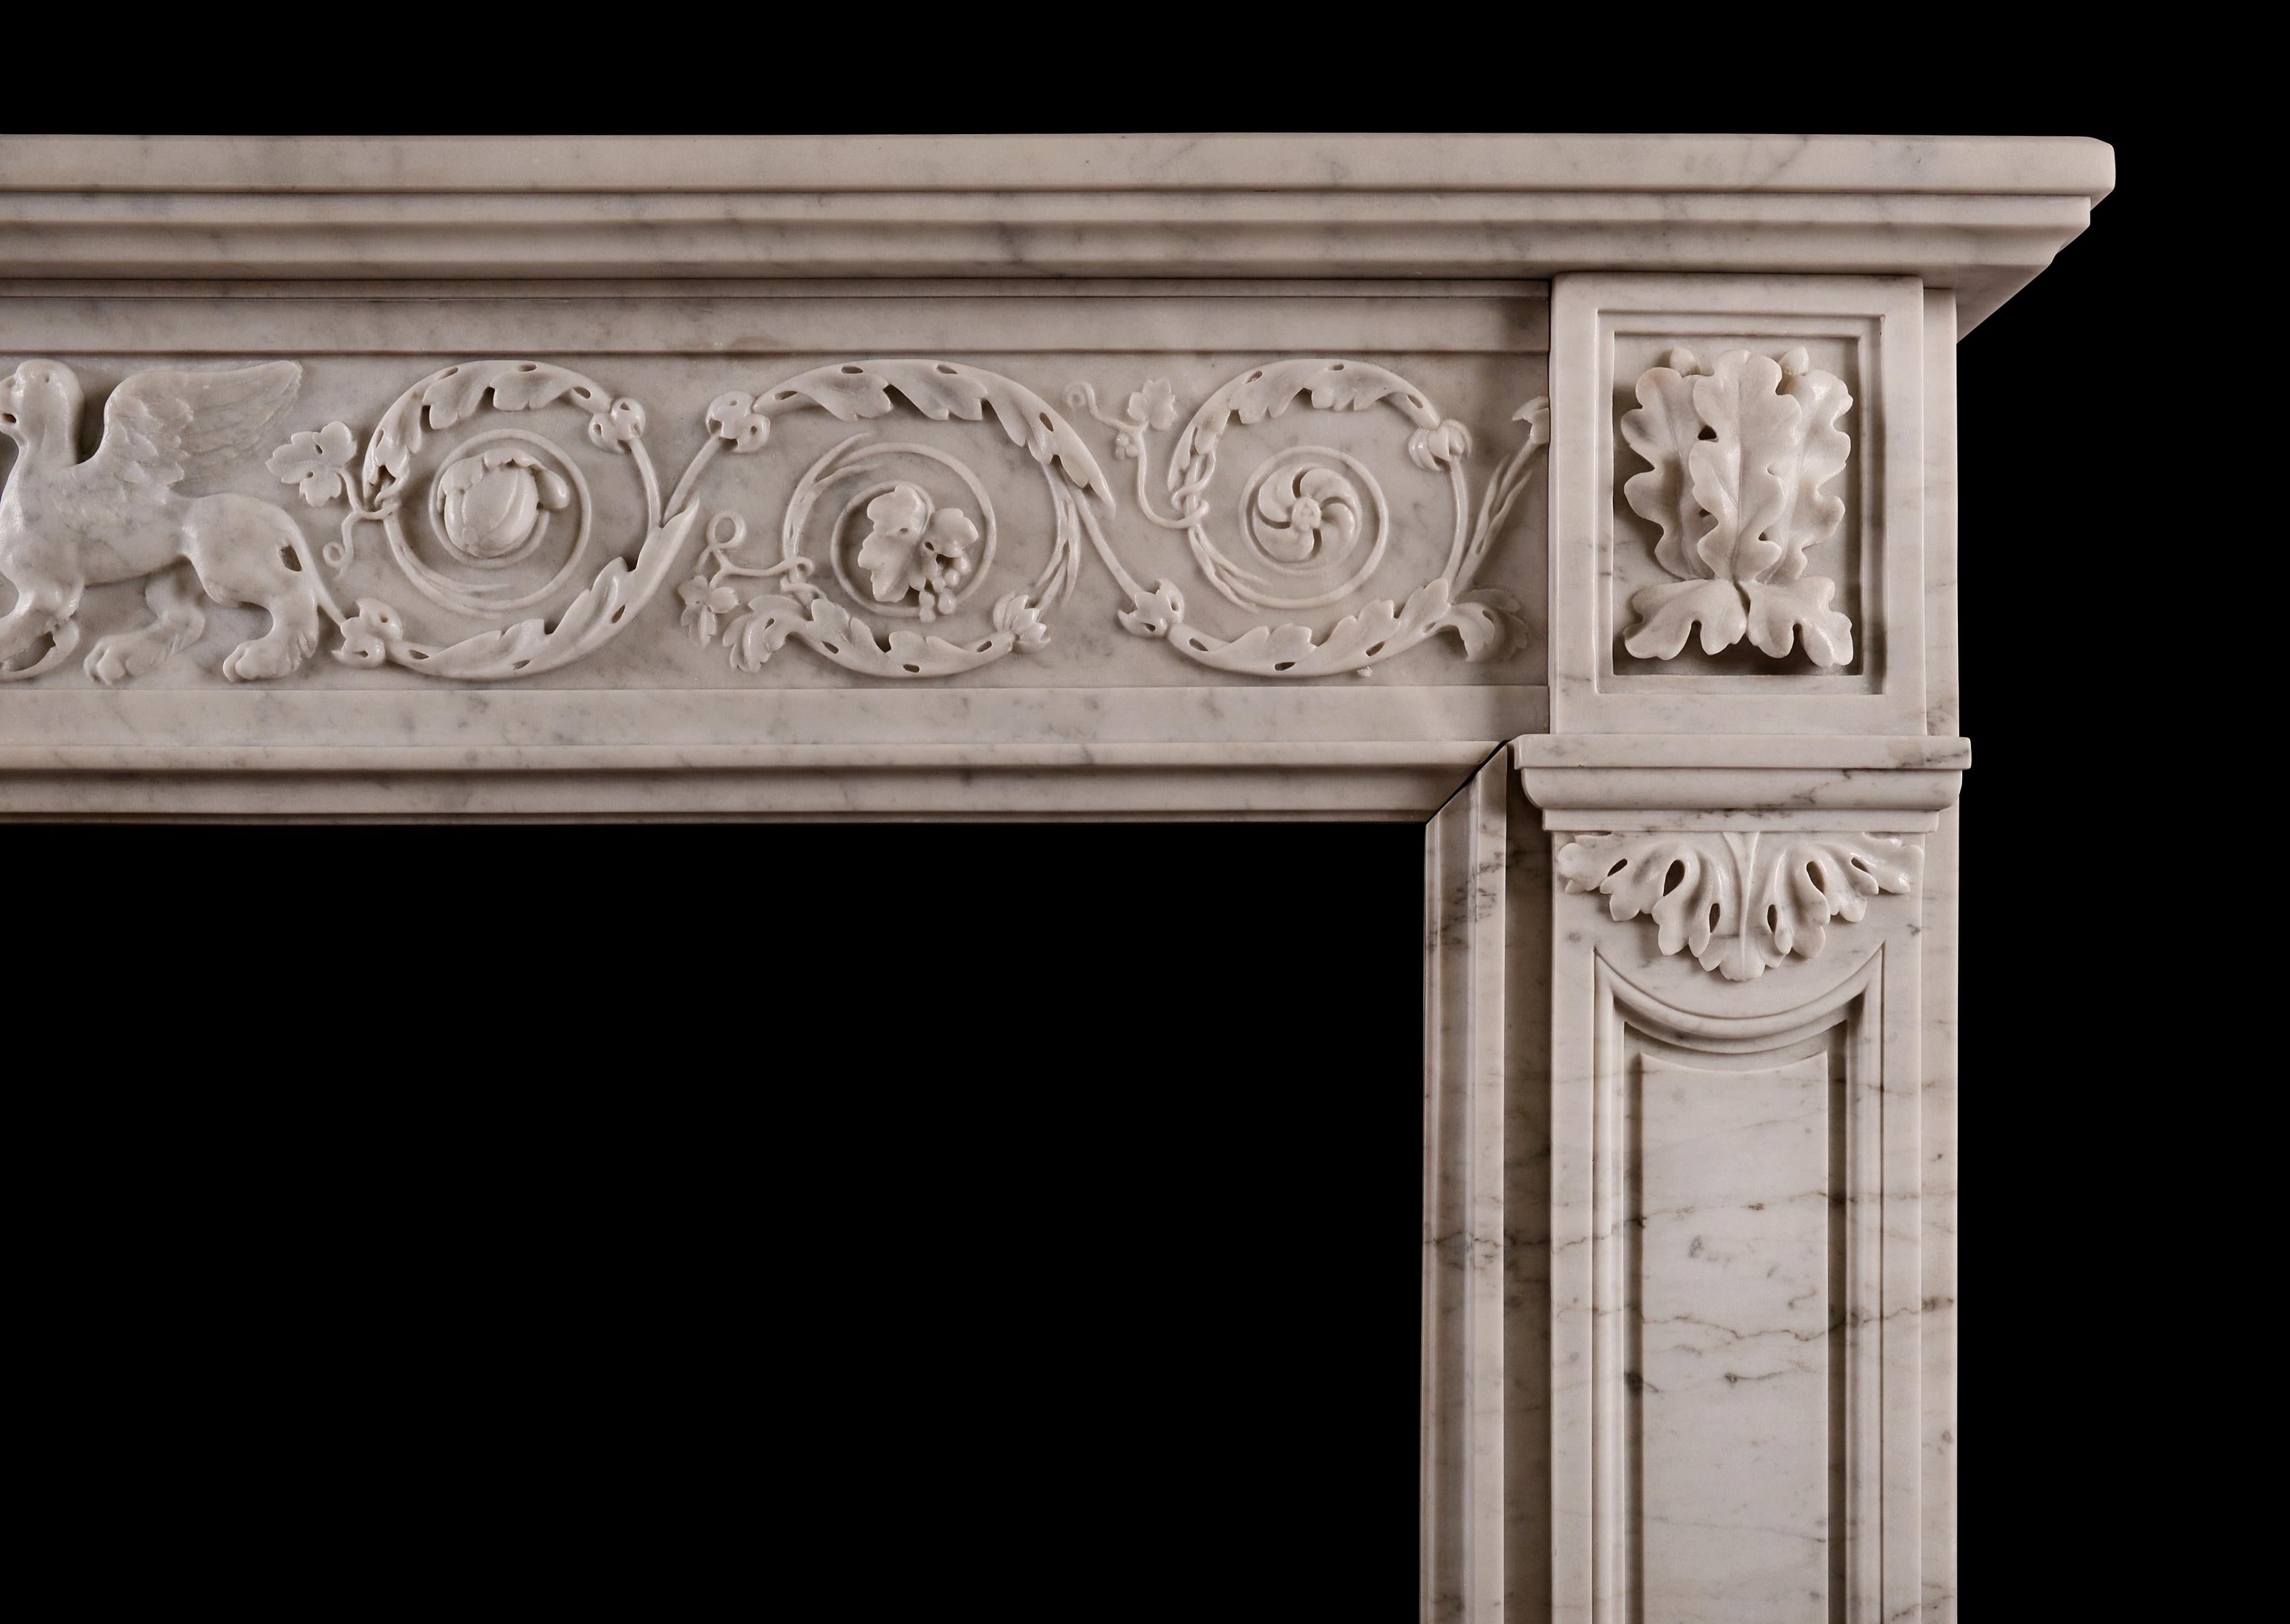 Ein französischer Kamin aus Carrara-Marmor im Louis-XVI-Stil. Der Fries mit geschnitztem Blattwerk und wirbelnden Patera, geflügelten Tieren und Urne in der Mitte. Die Pfosten sind mit einem geformten Paneel versehen, das von einer Endleiste mit